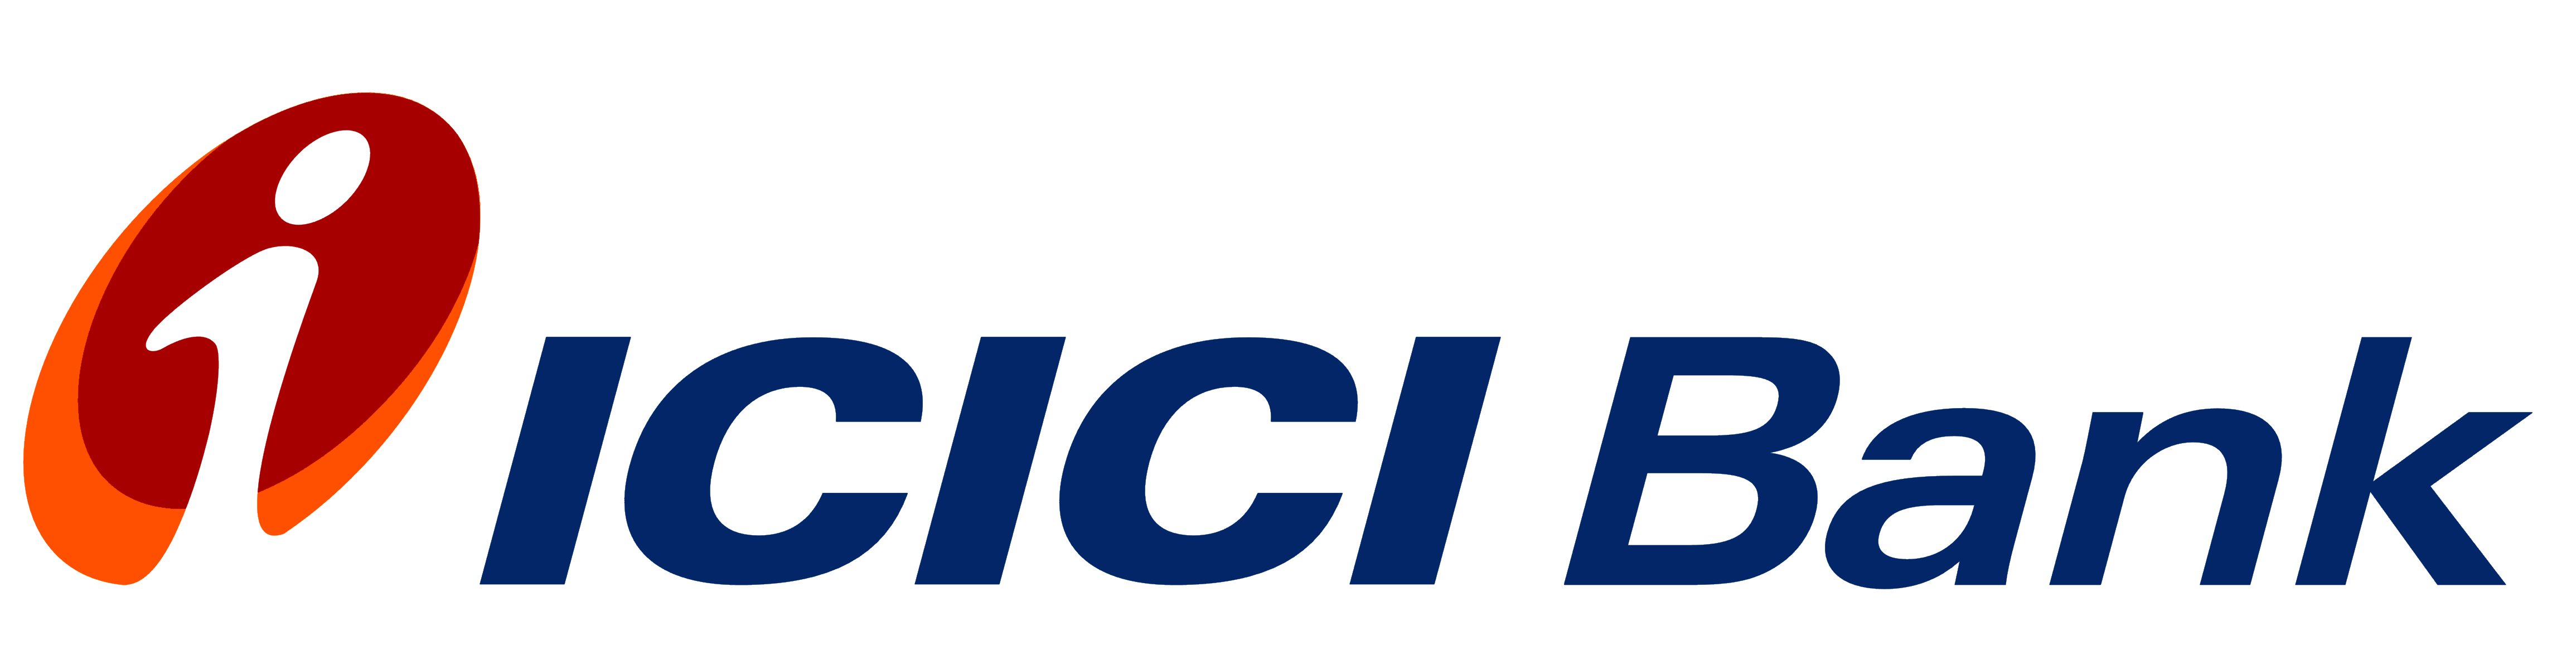 ICICI Bank logo, logotype